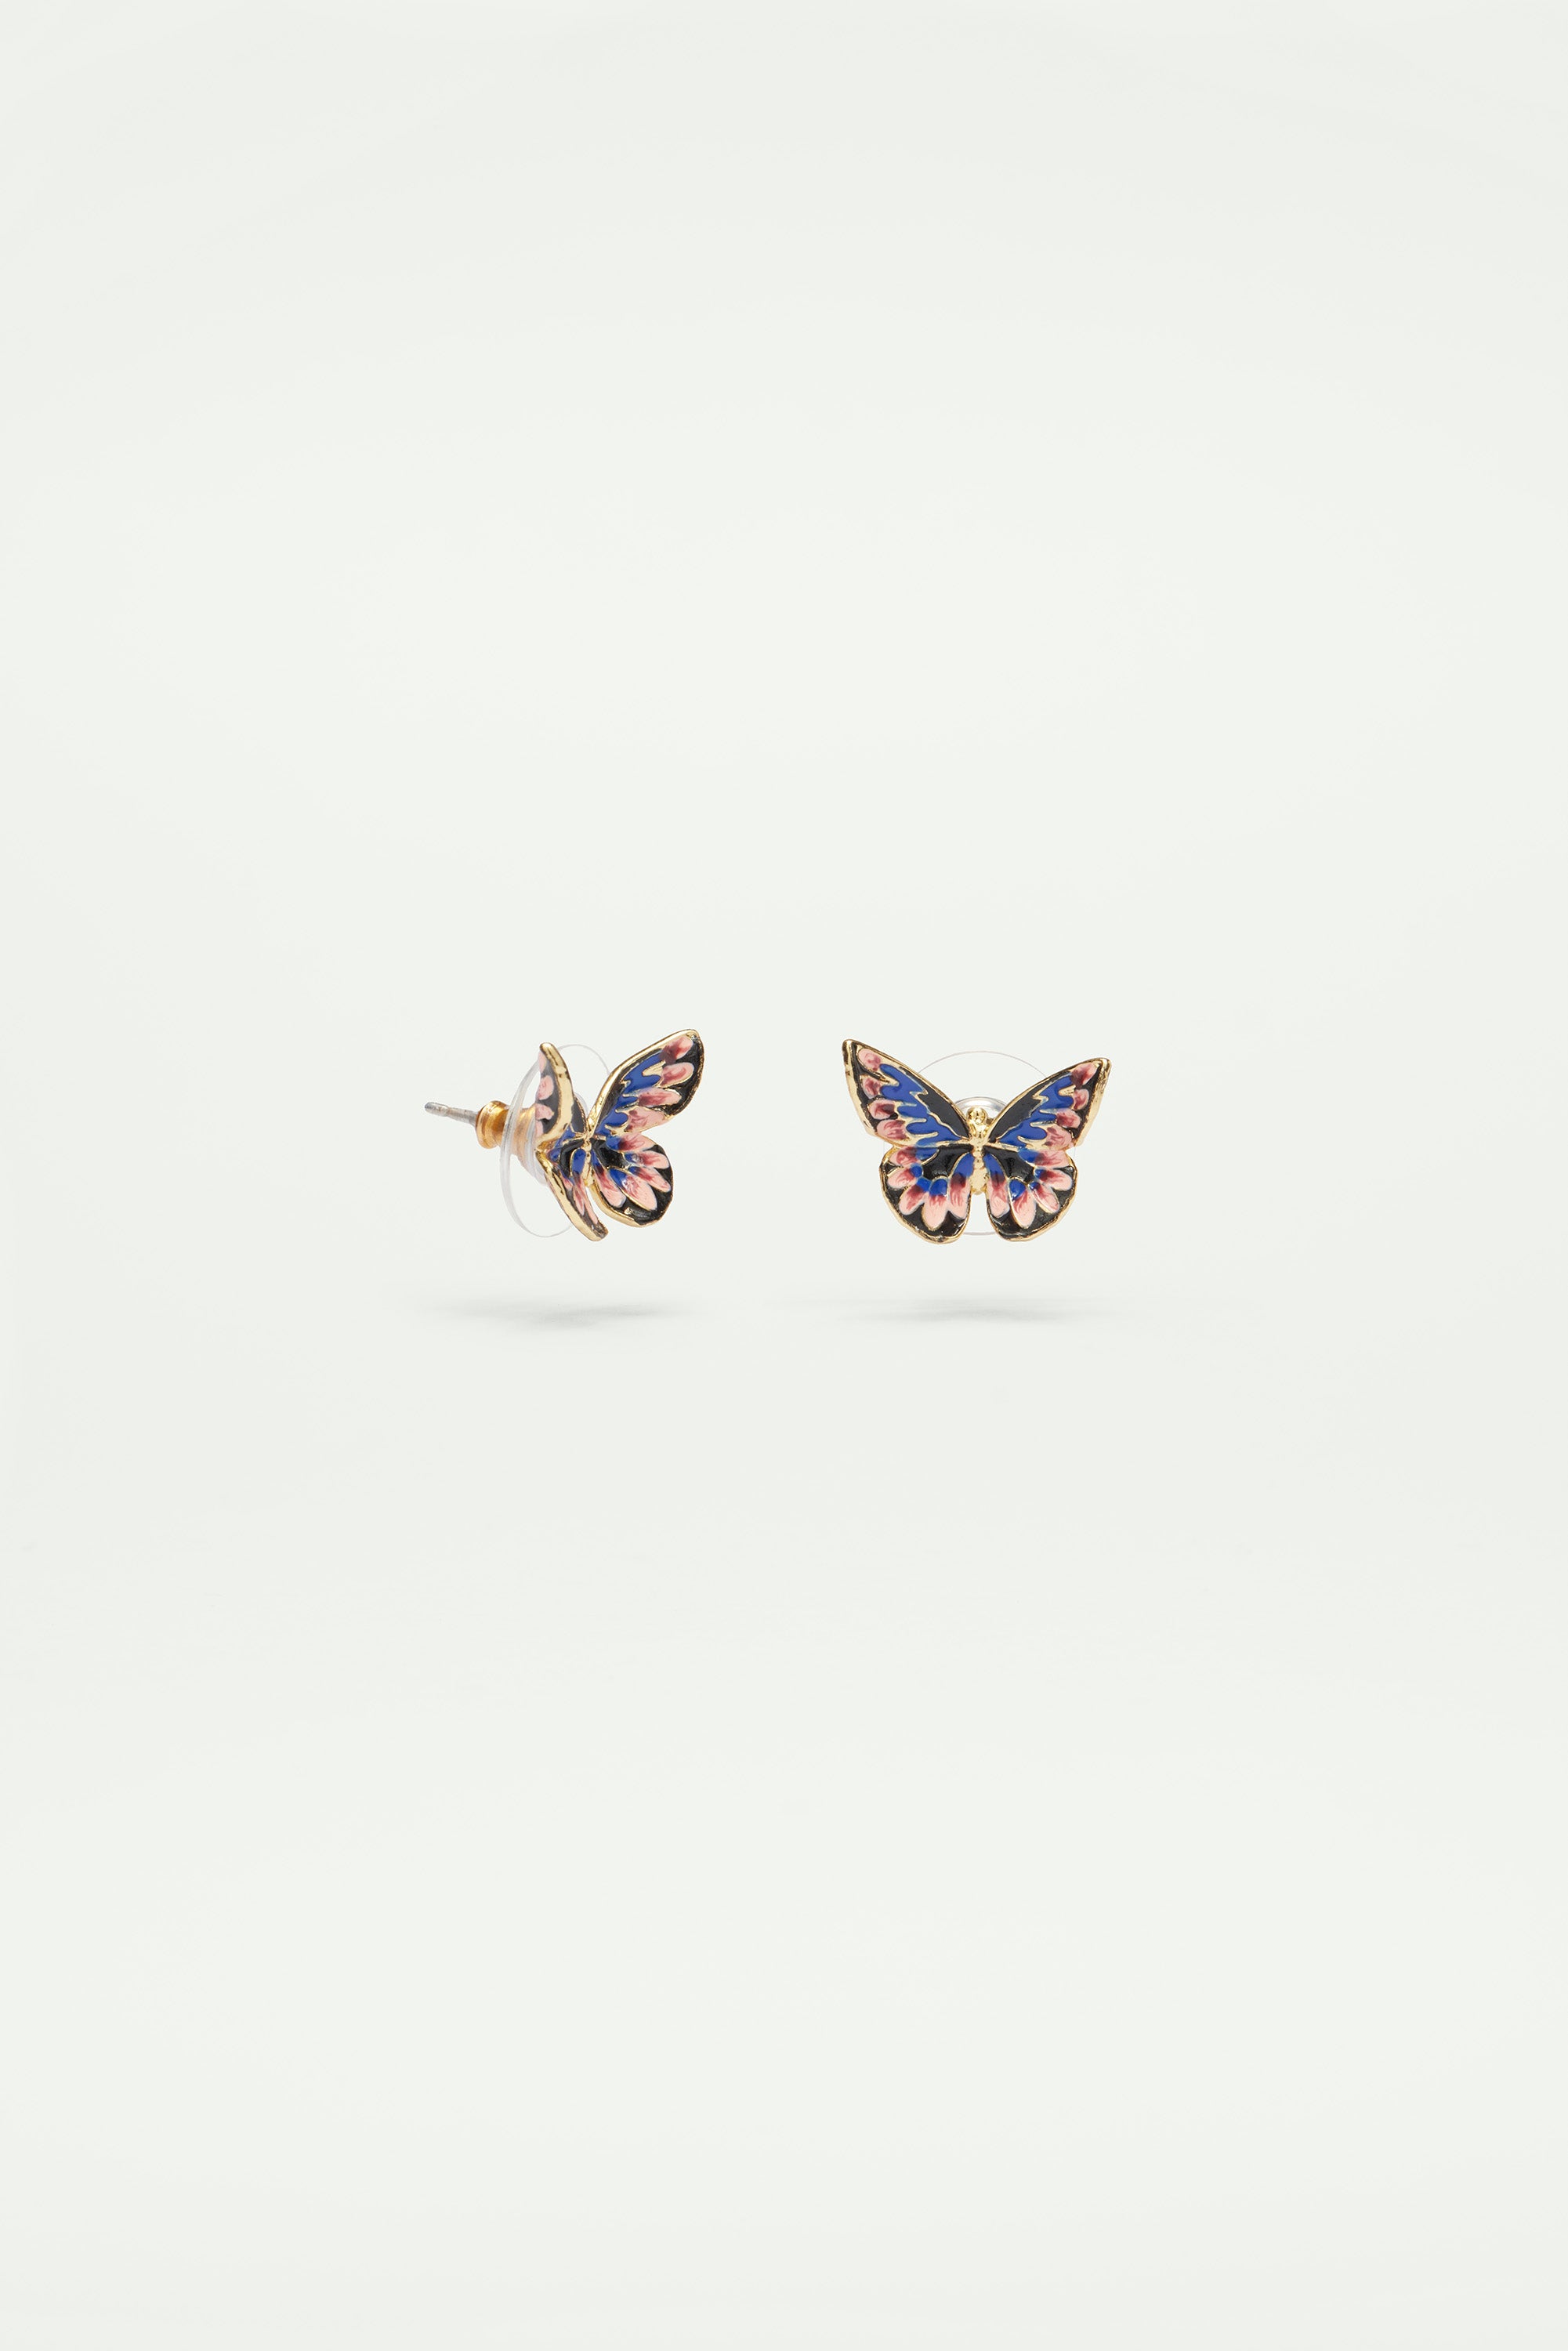 Japanese Emperor butterfly earrings